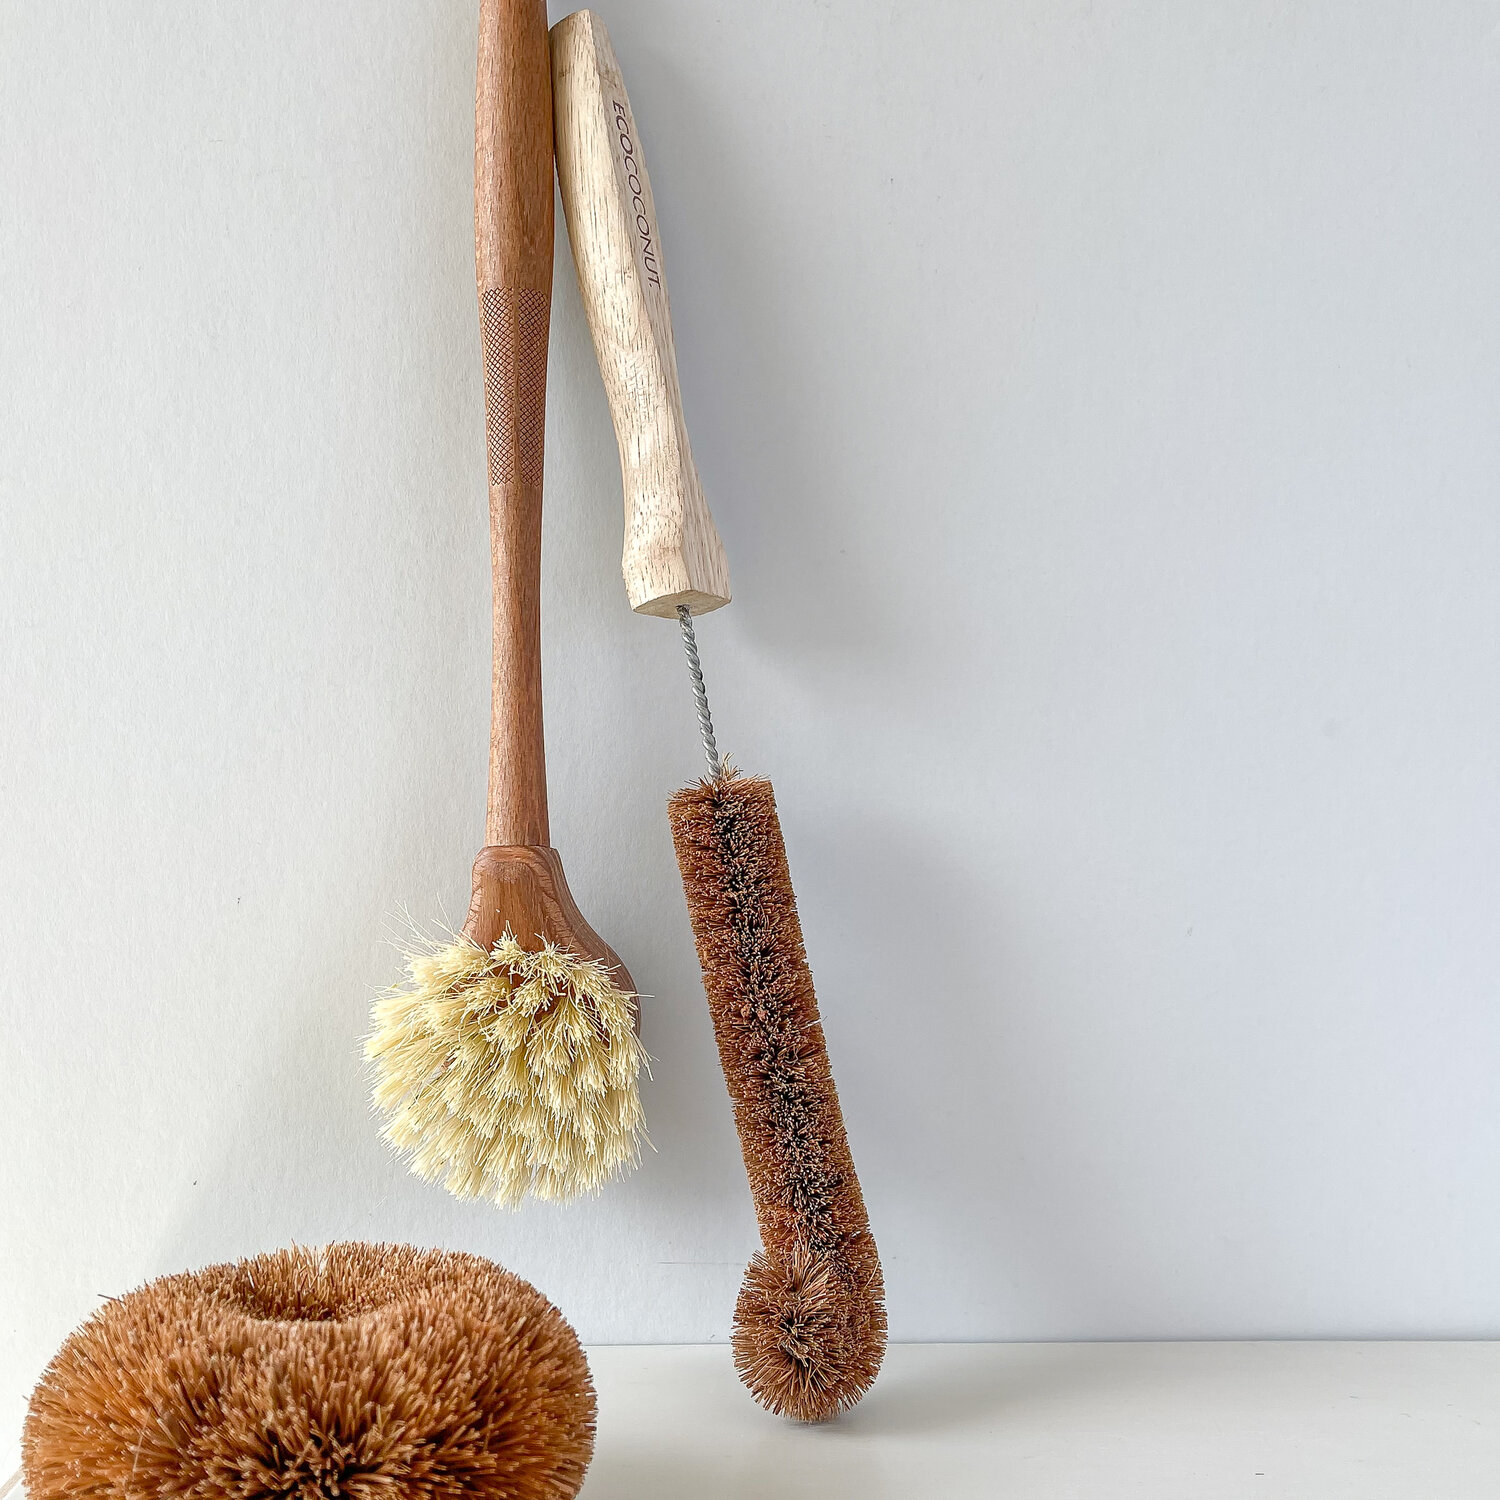 Coconut Dish & Bottle Brushes